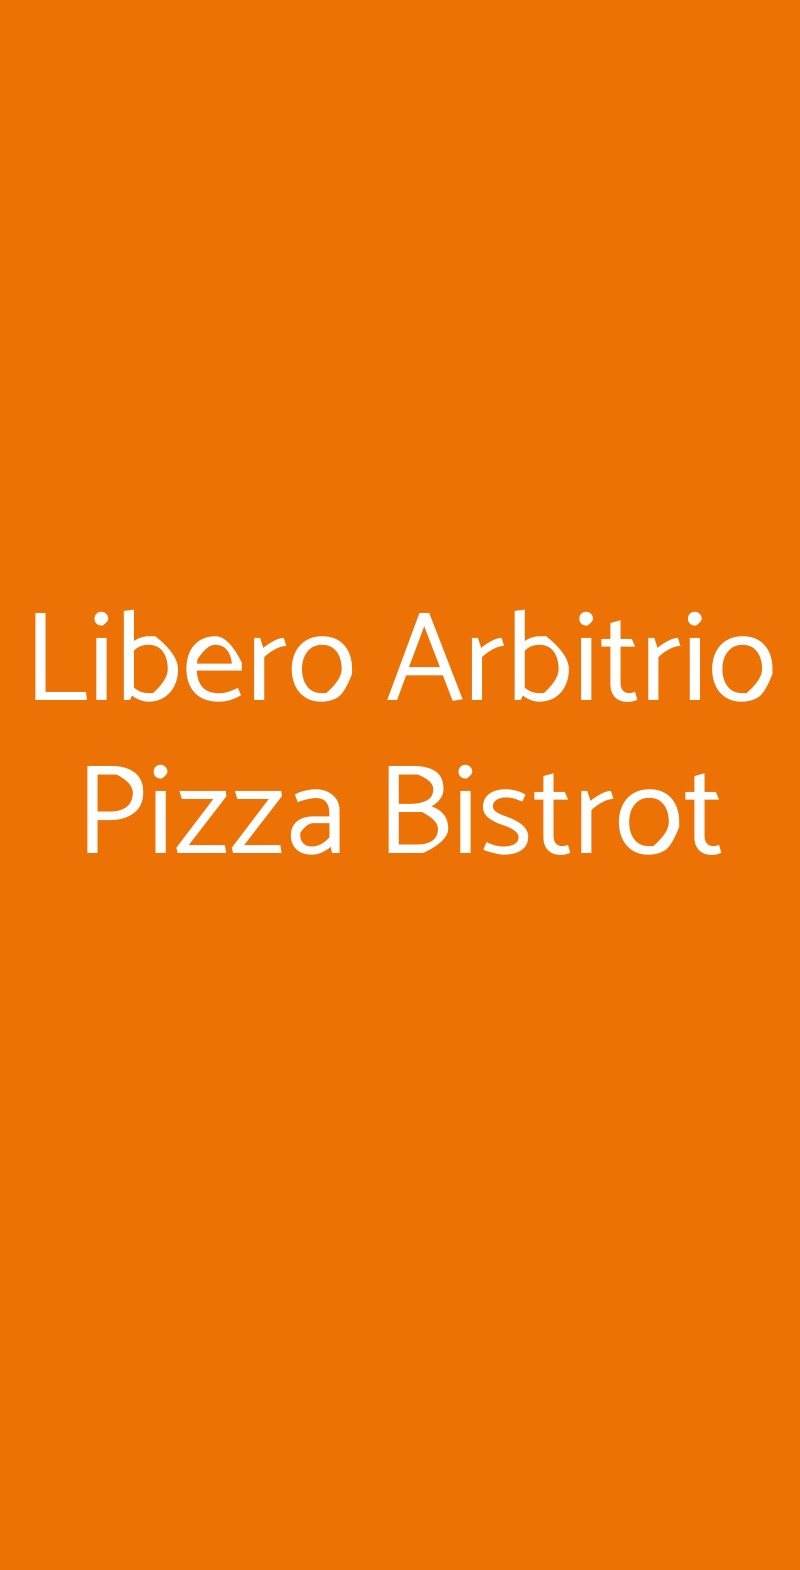 Libero Arbitrio Pizza Bistrot Roma menù 1 pagina